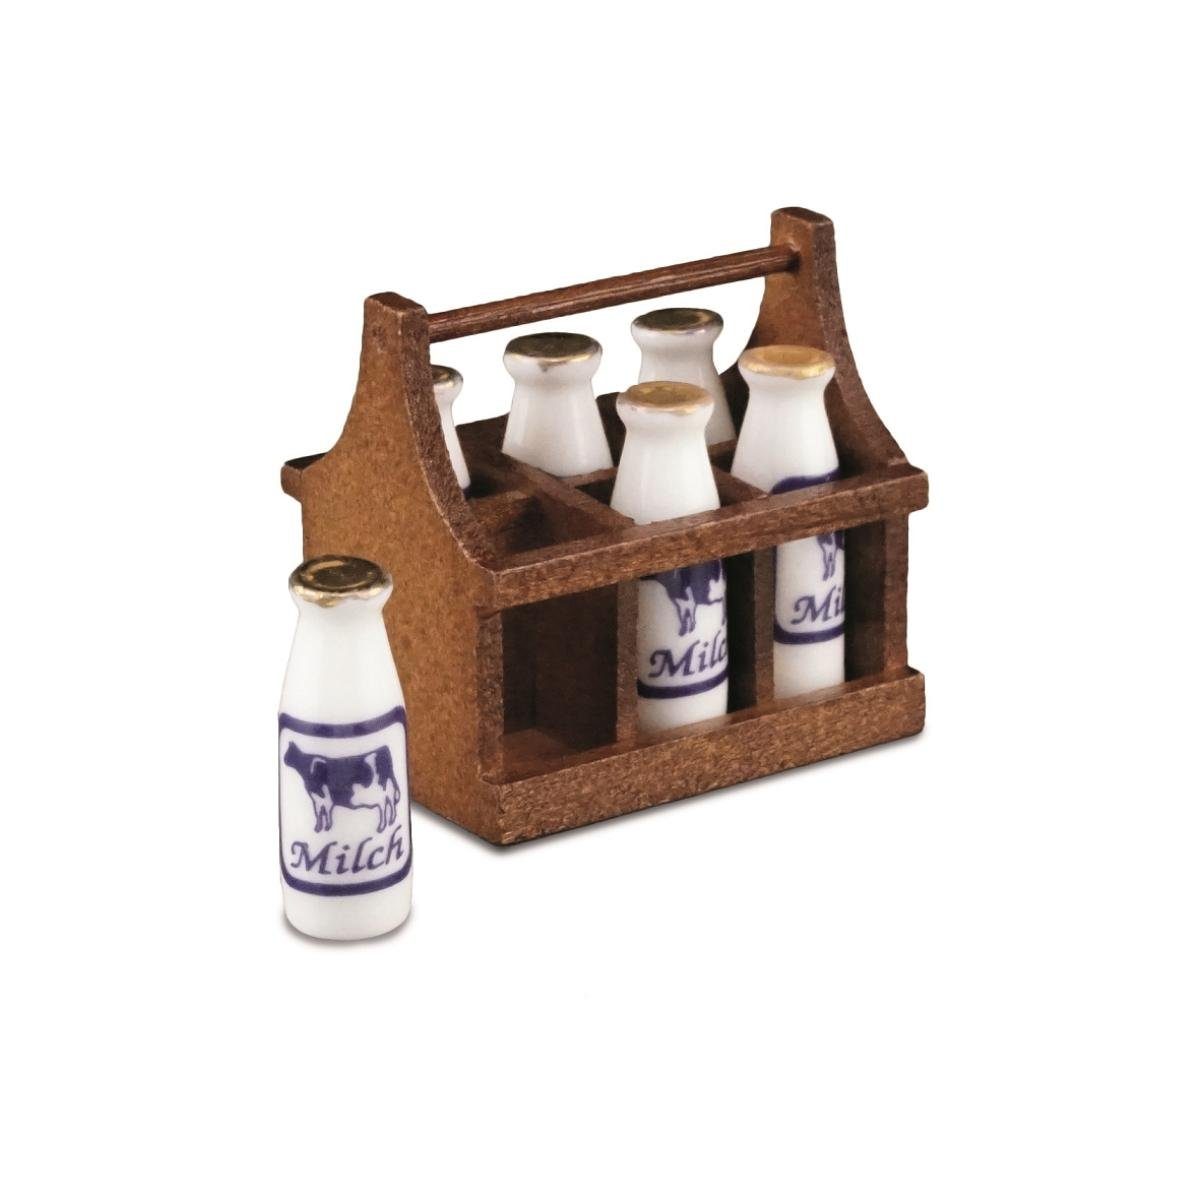 001.413/5 - Milchflaschenträger aus Dekofigur Miniatur Holz, Porzellan Reutter